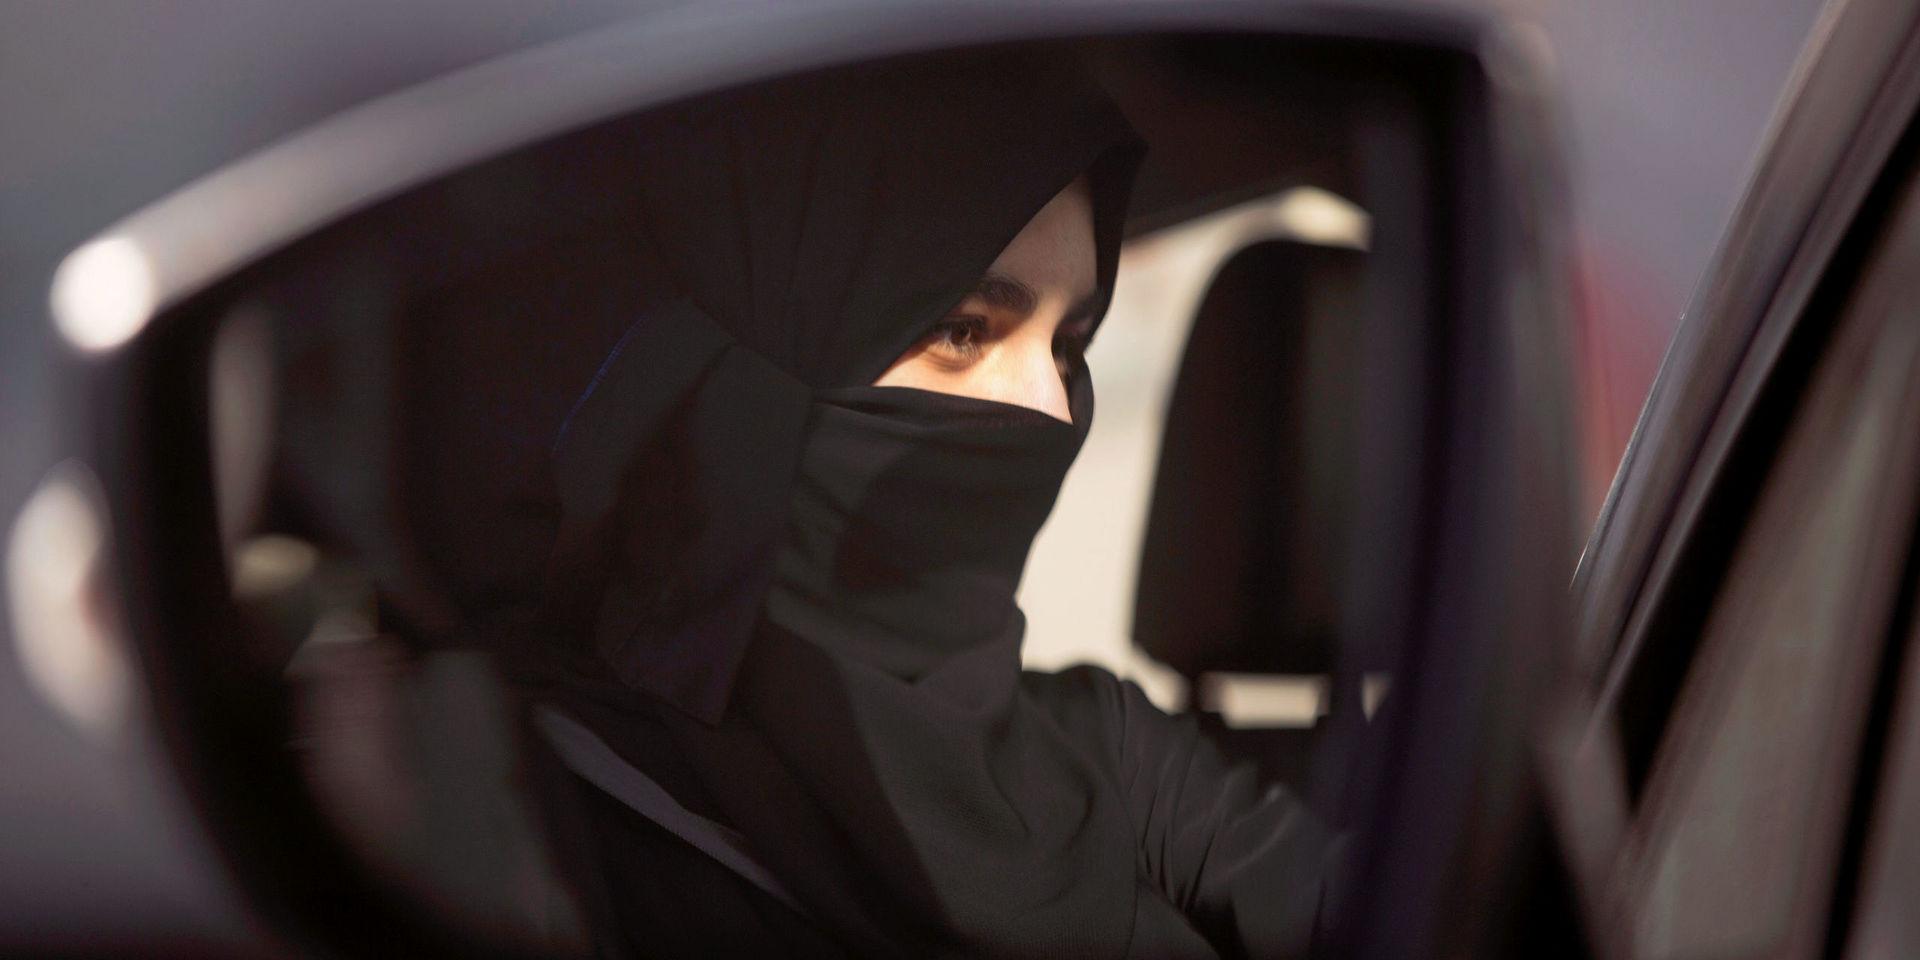 Saudiska kvinnors nyfunna frihet är glädjande, och absolut nödvändigt för att landet ska kunna växa och undvika oljans förbannelse.